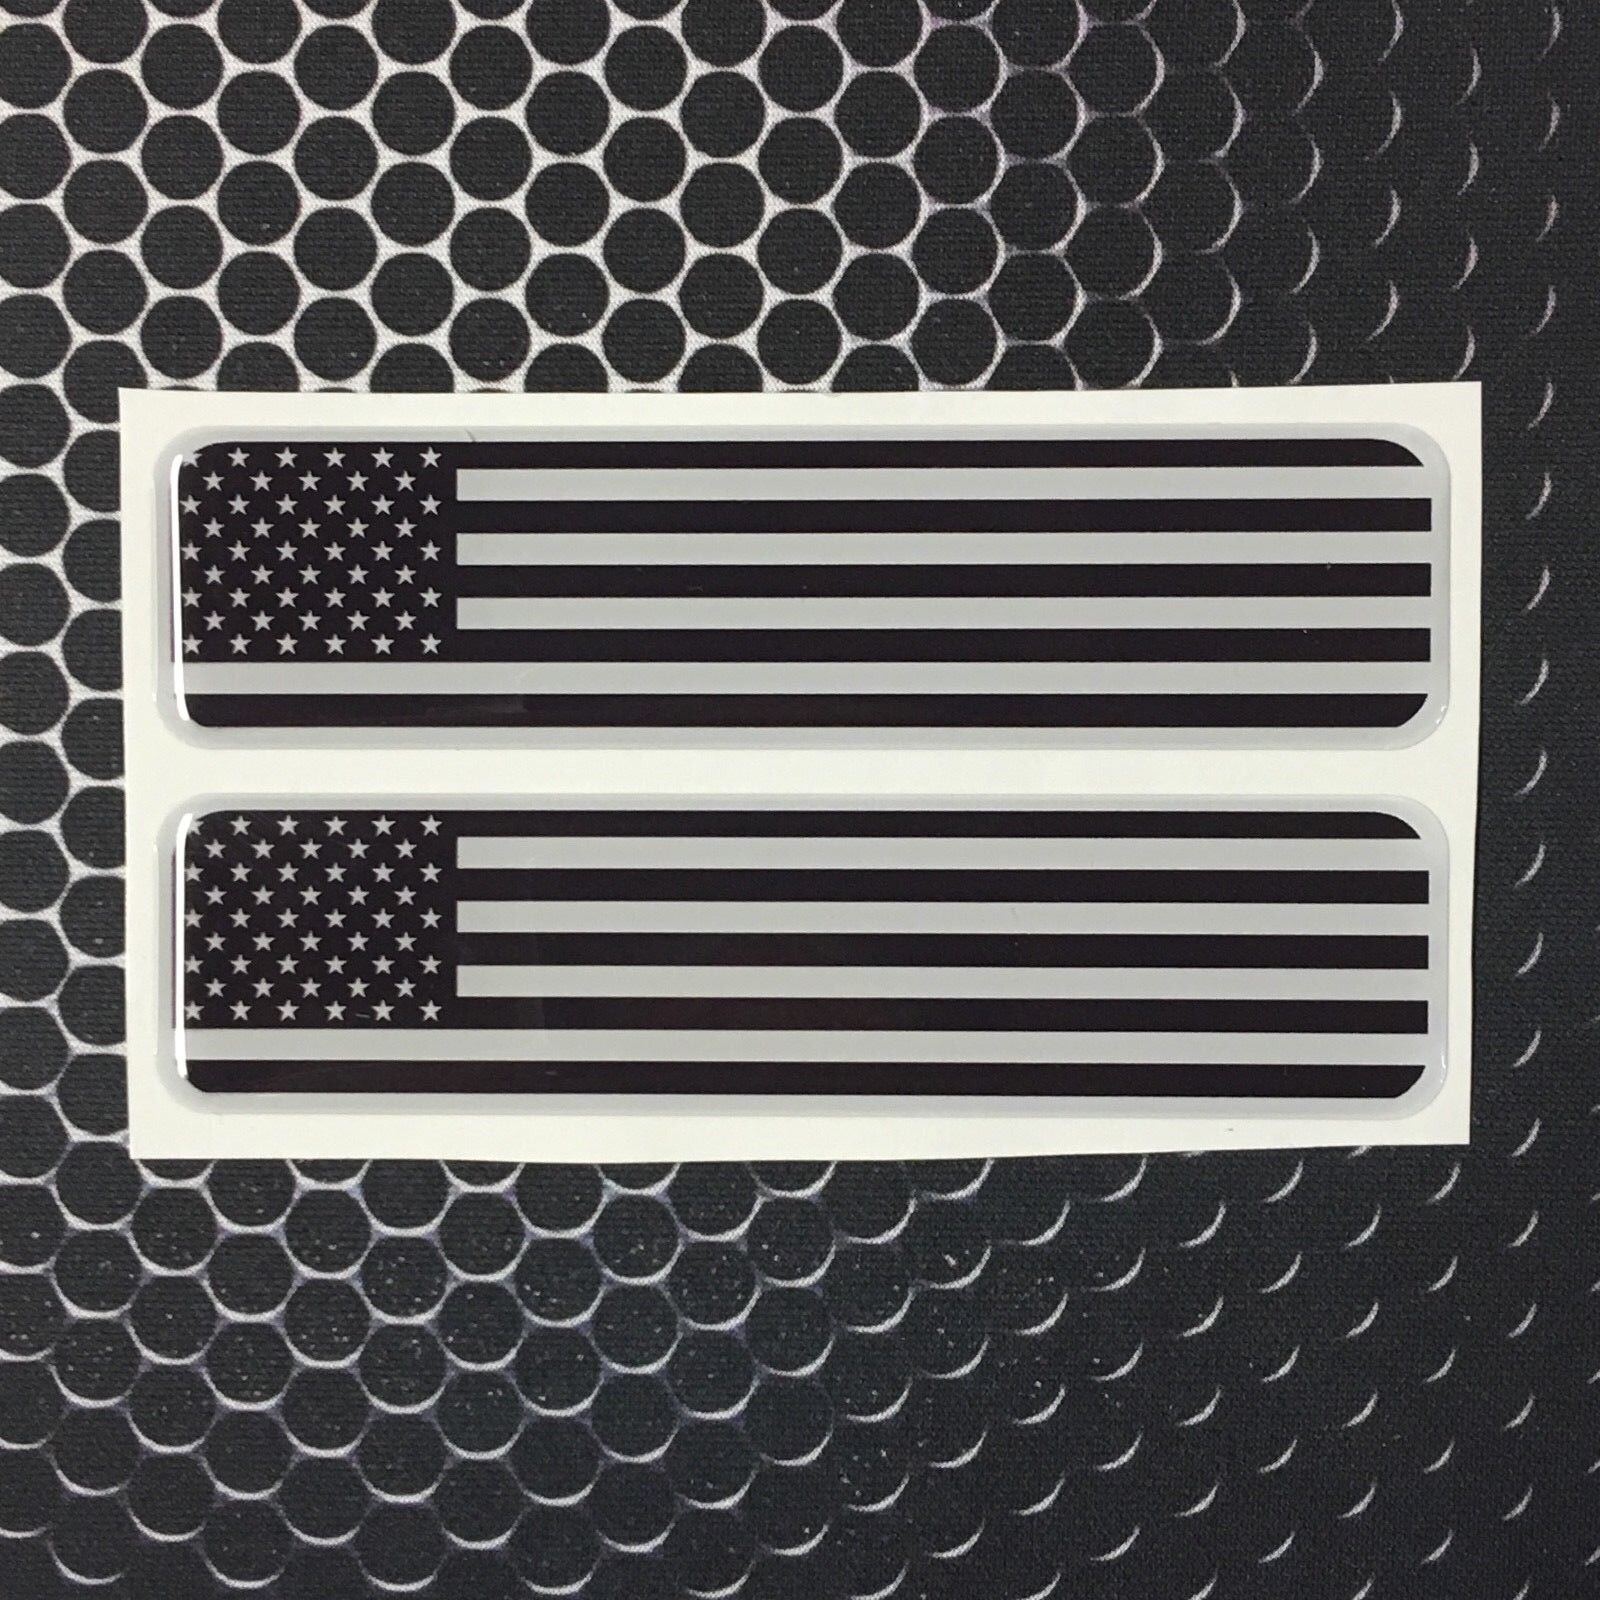 USA America Monochrome Flag Domed Decal Emblem Car Flex Sticker 4\